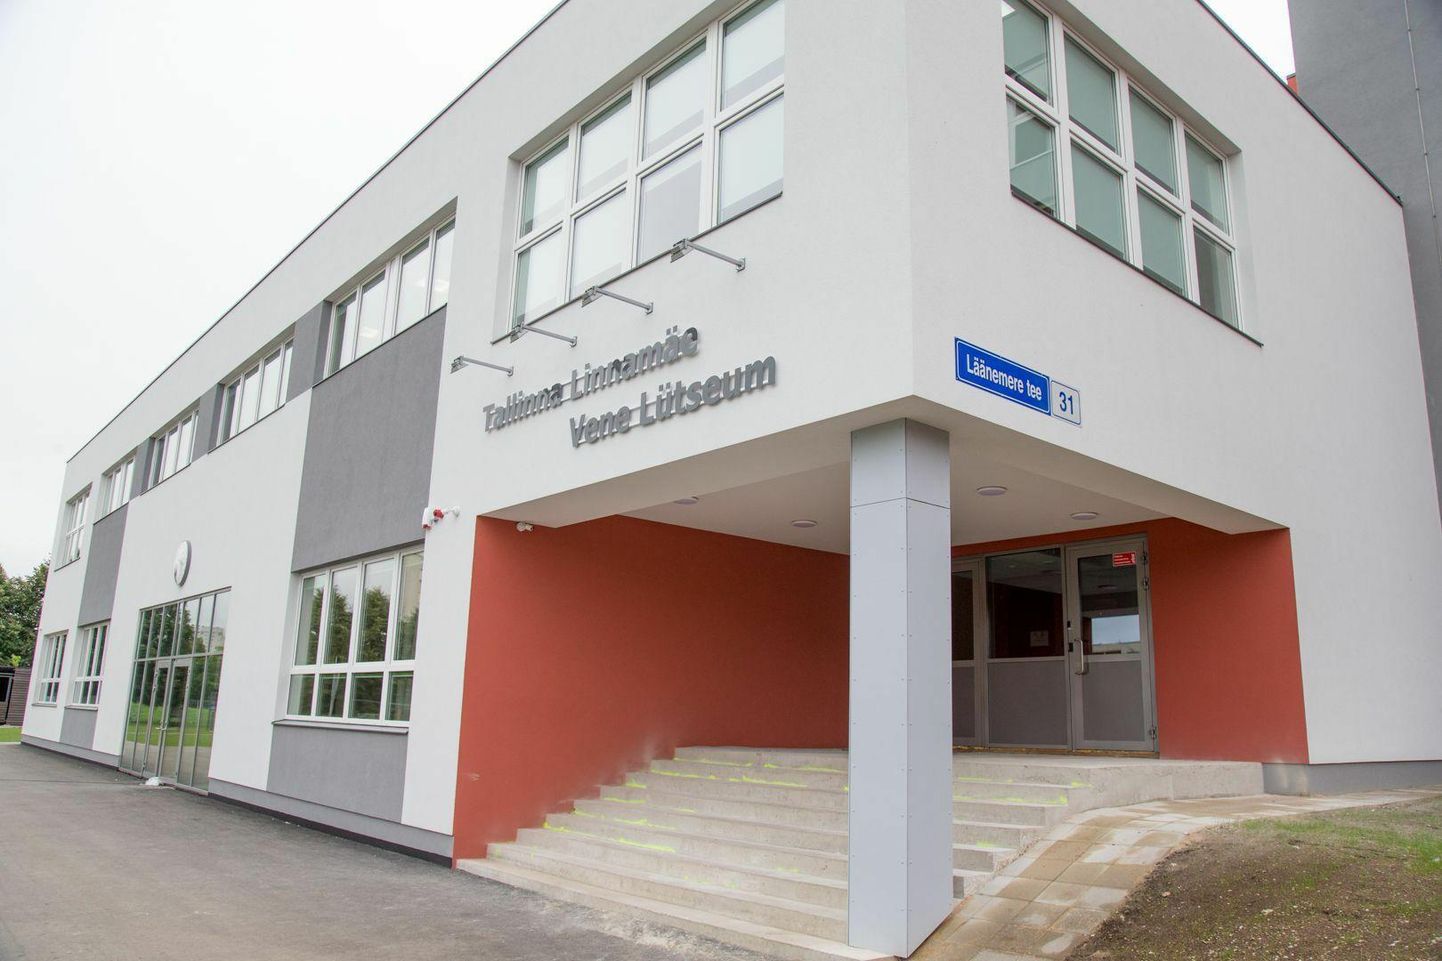 Tallinna Linnamäe Vene lütseum on üks suurimaid vene õppekeelega koole Eestis.